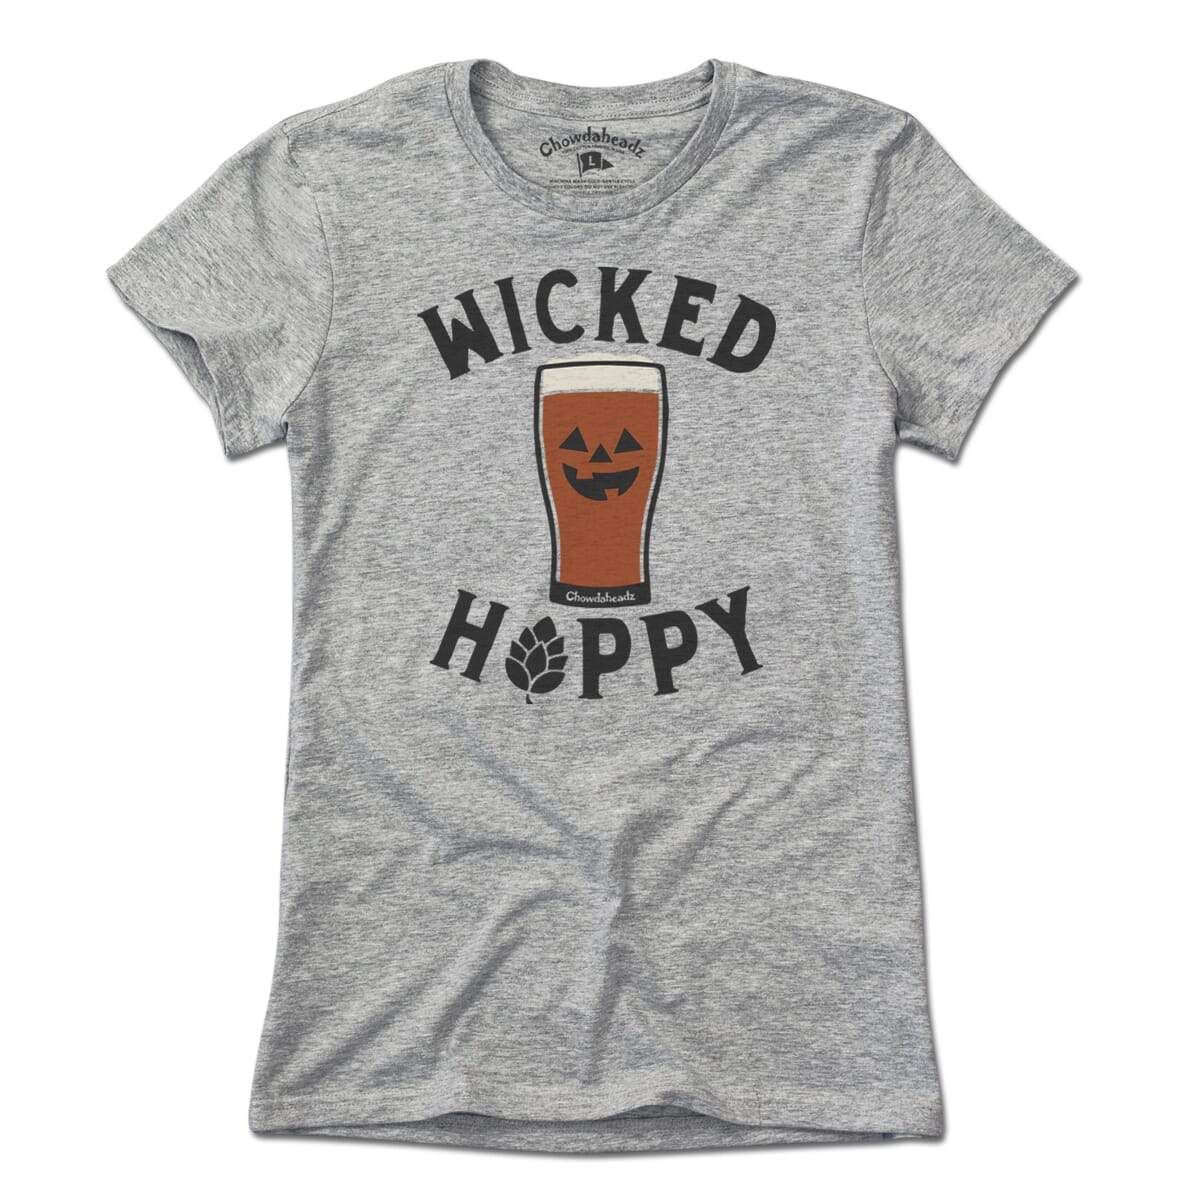 Wicked Hoppy Pumpkin T-Shirt - Chowdaheadz